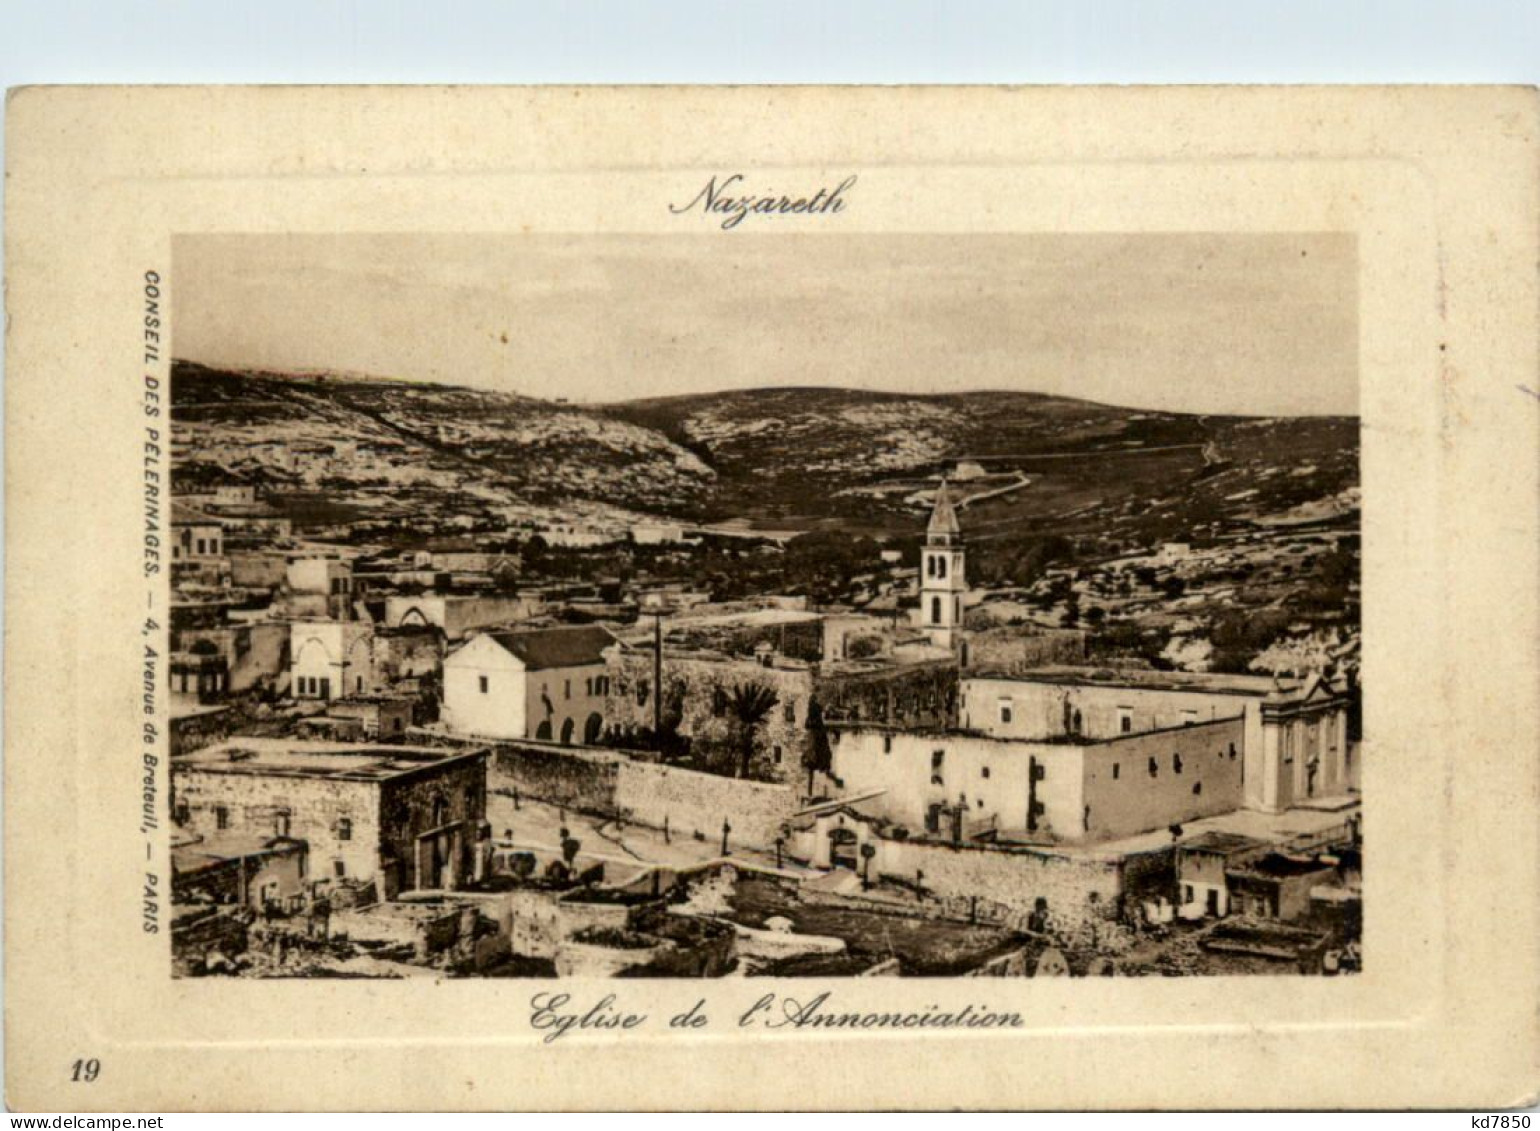 Nazareth - Eglise De L Annoncialion - Palestine